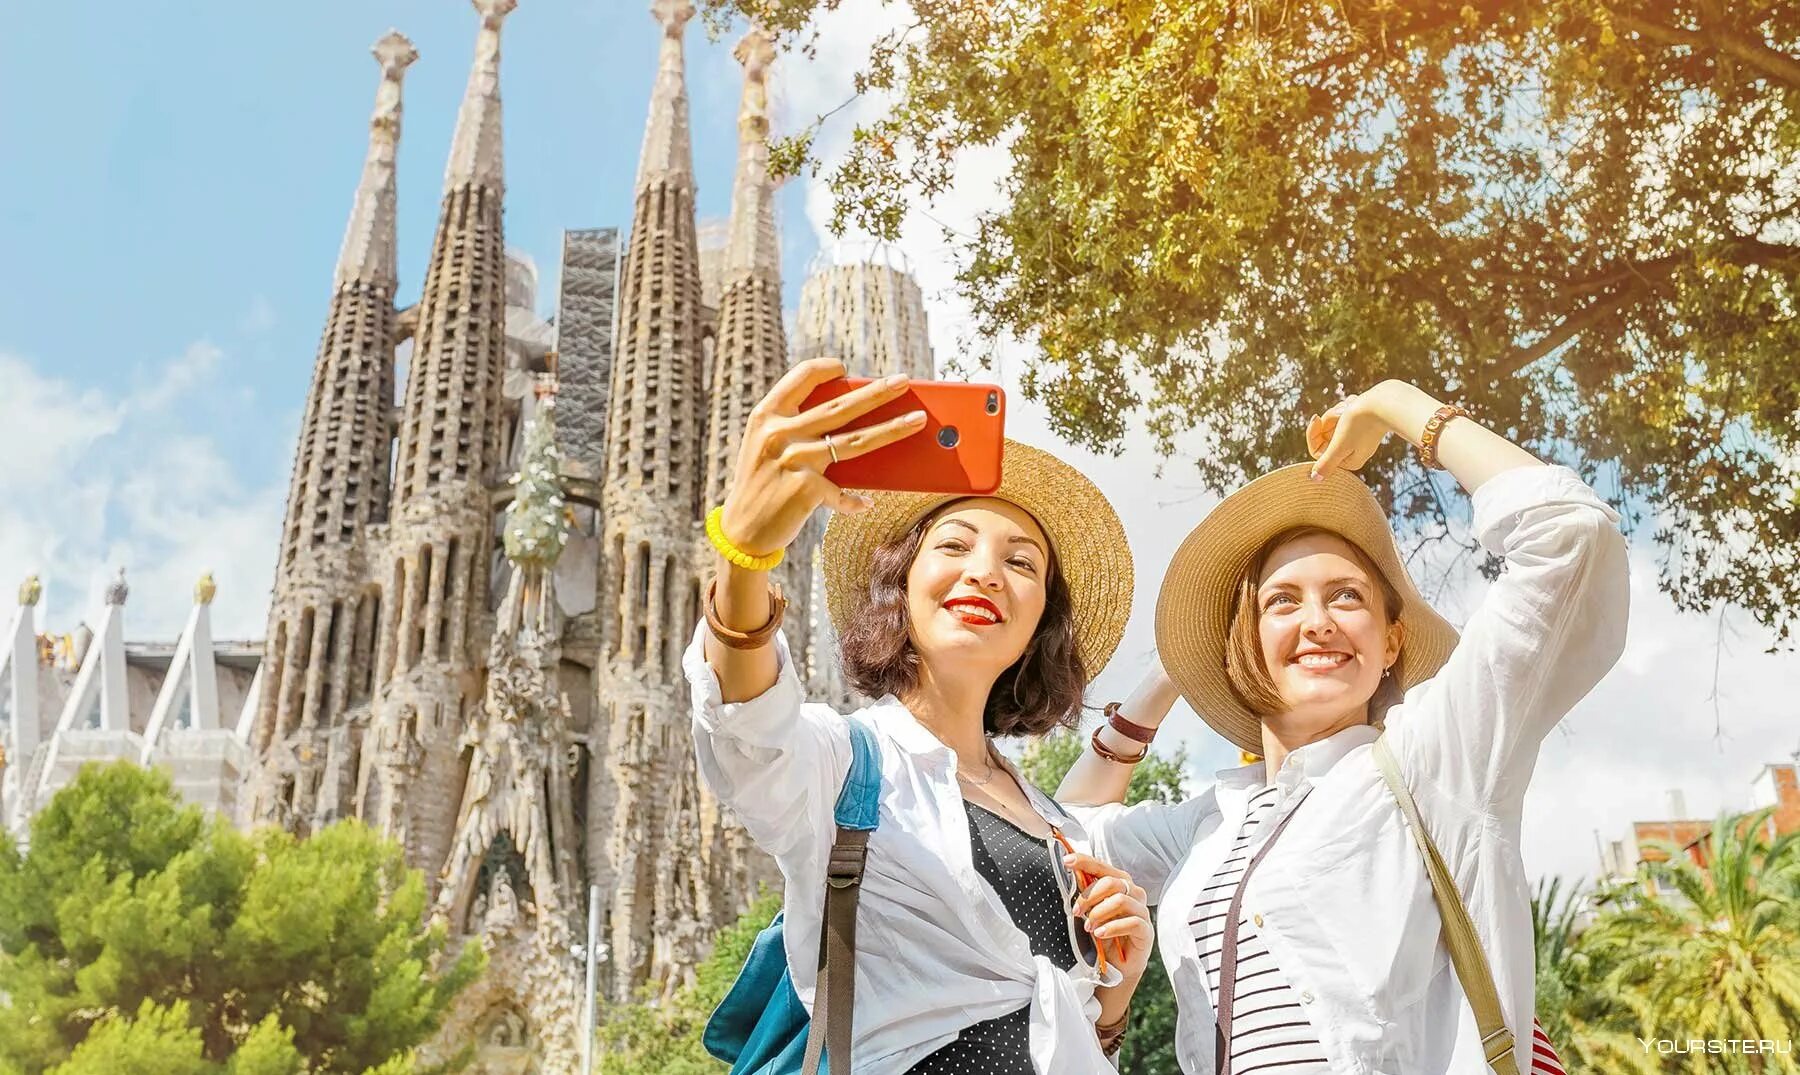 Популярные места среди туристов. Туристы в Испании. Испания туризм. Культурно-исторический туризм. Культурно-познавательный туризм.